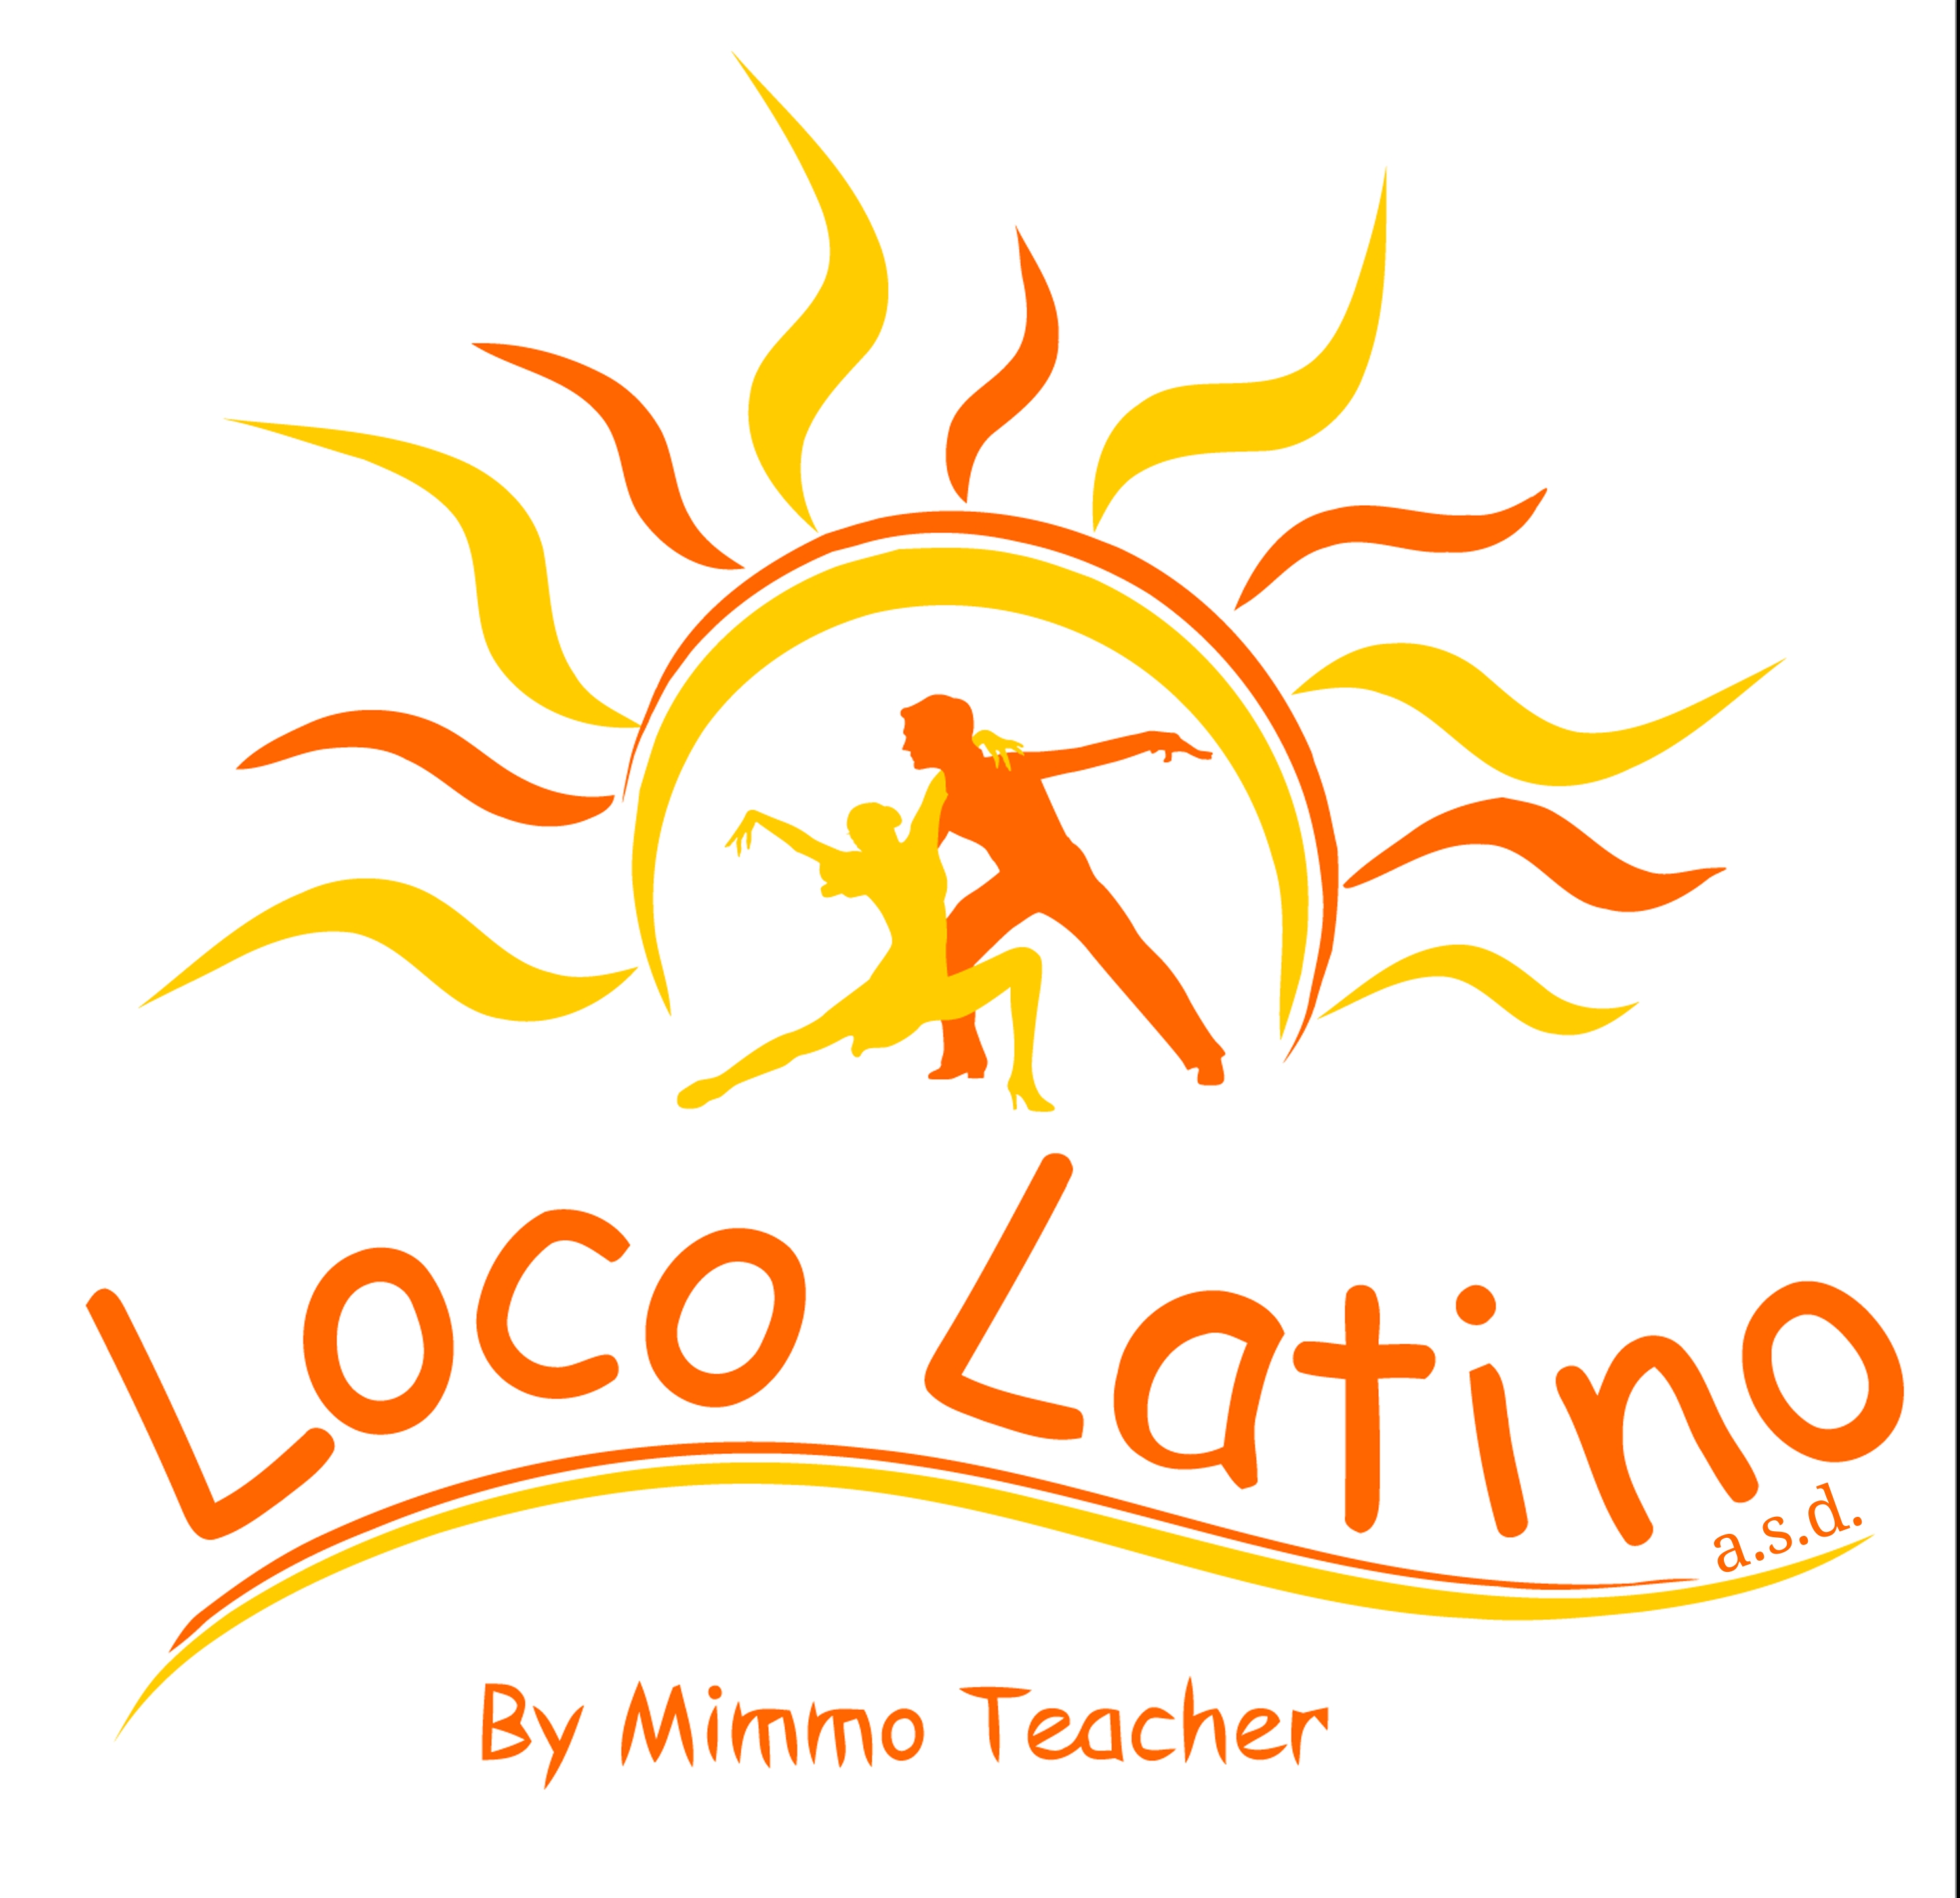 Loco Latino Lecco